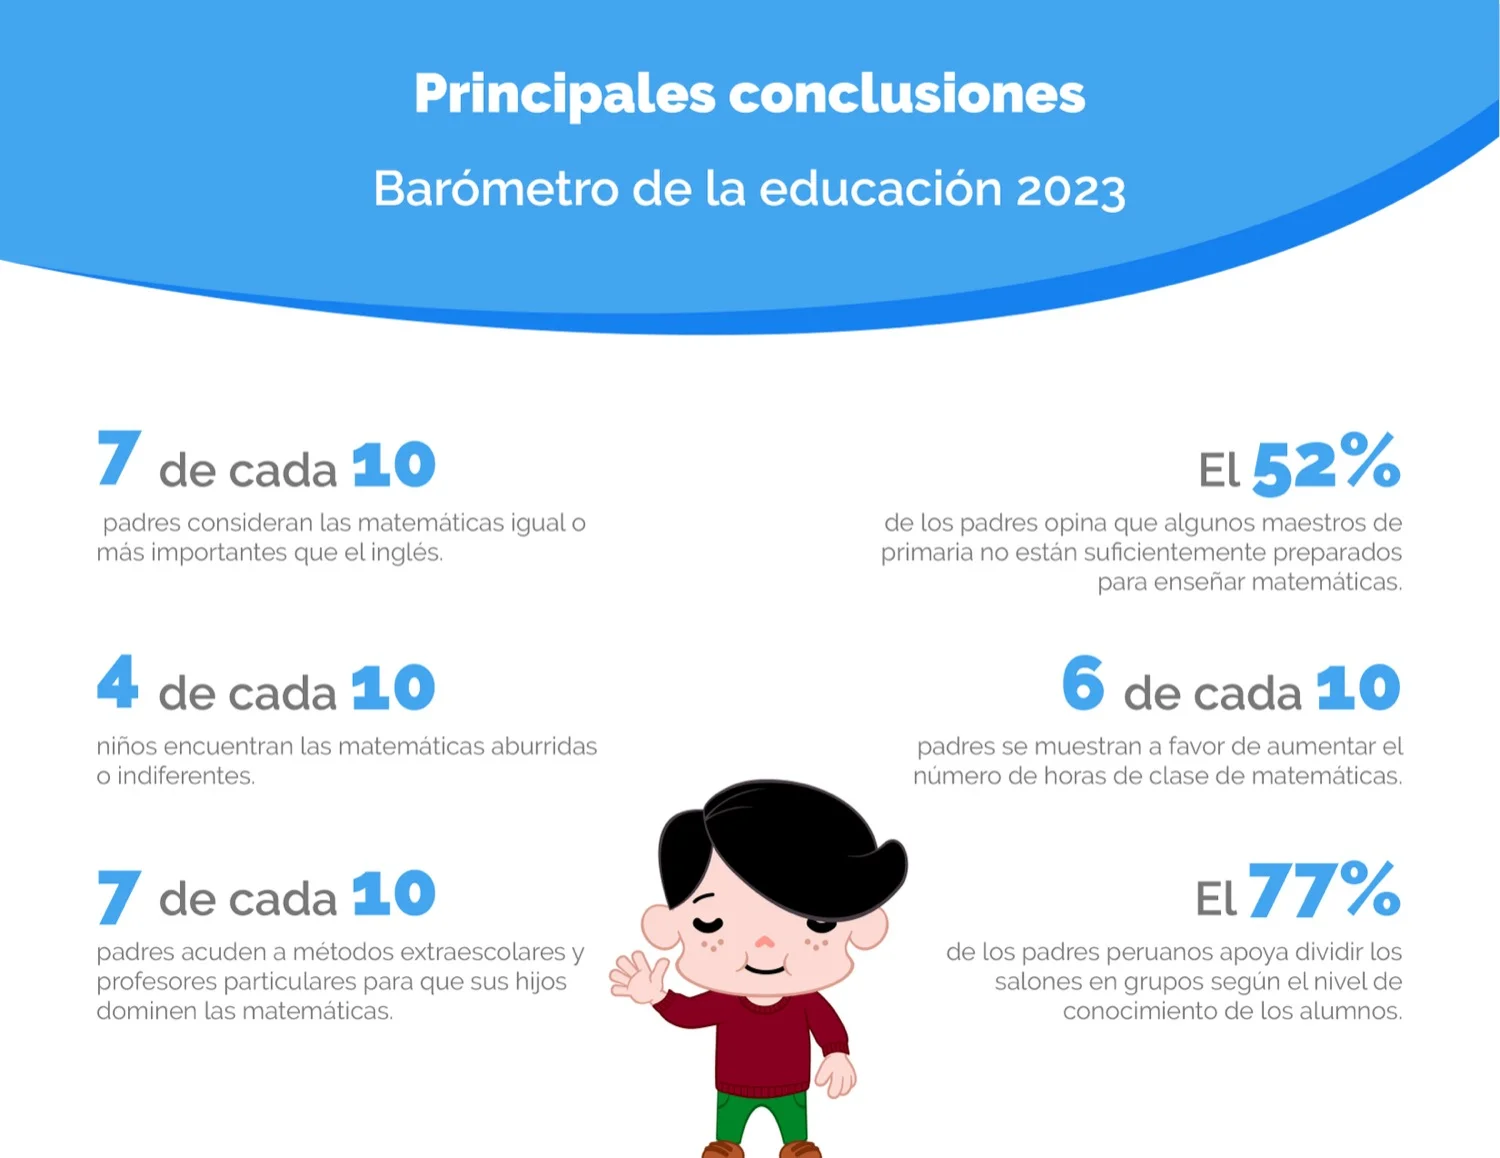 ¿Qué opinan los padres peruanos sobre la educación escolar?